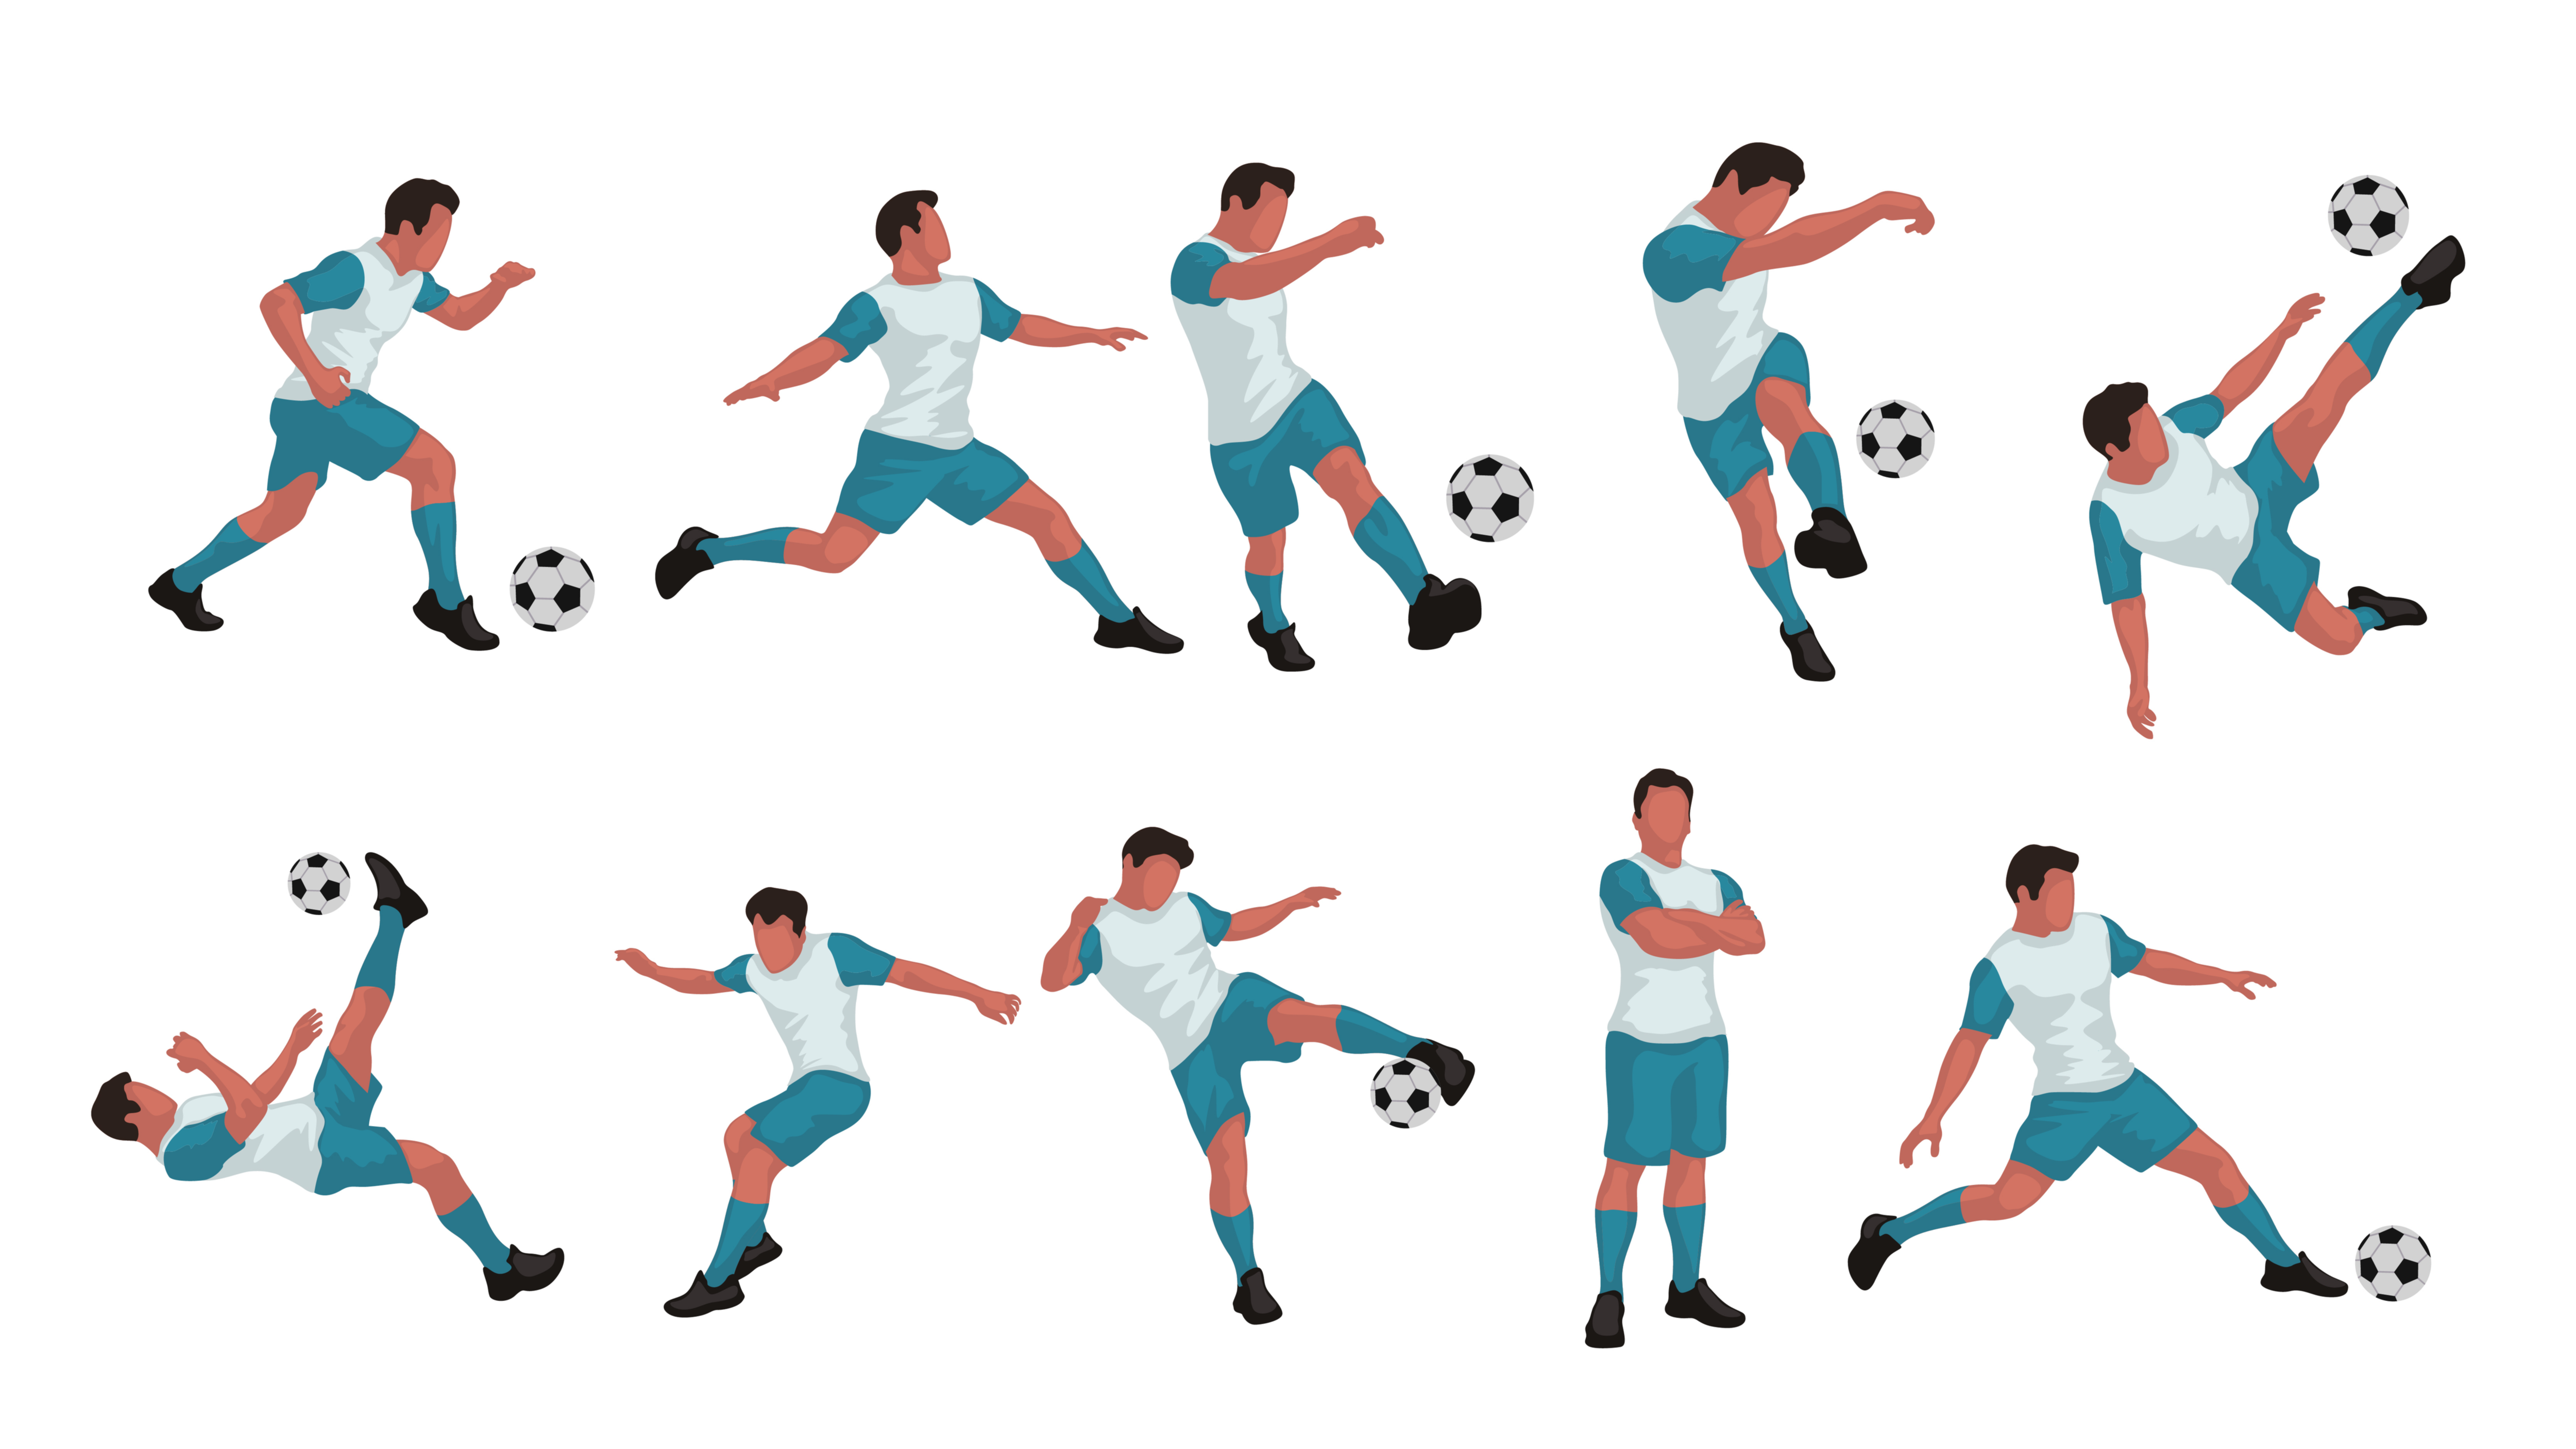 サッカーが上手い子と下手な子の1番の違いは 身体を動かす技術